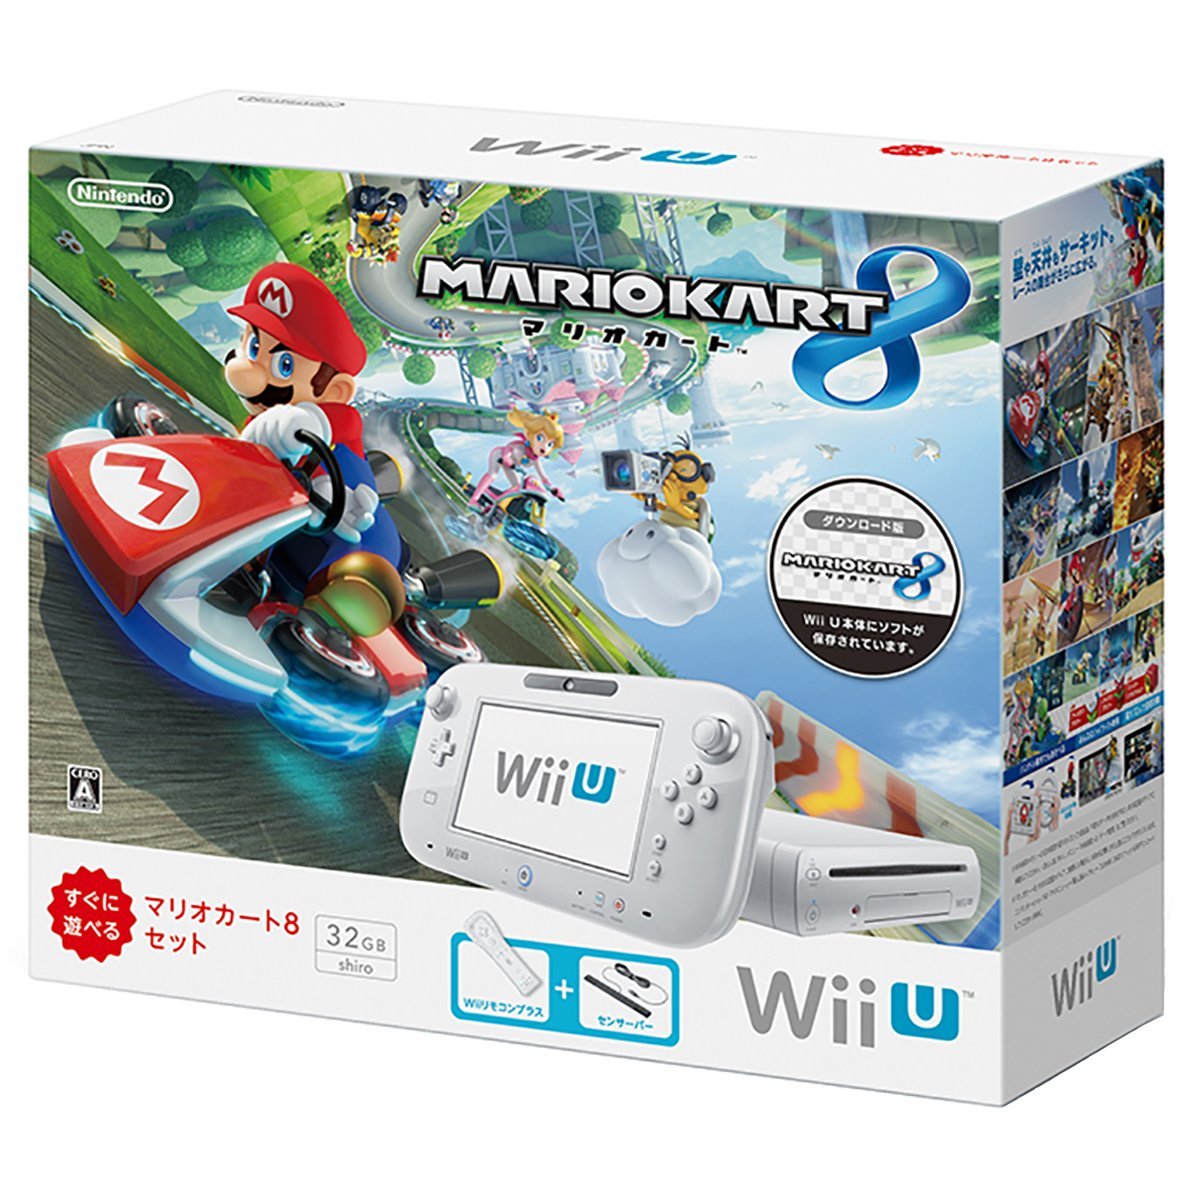 Wii U マリオカート８ セット 一番安く 最安値 で予約購入しよう Wiiuソフト激安情報紹介